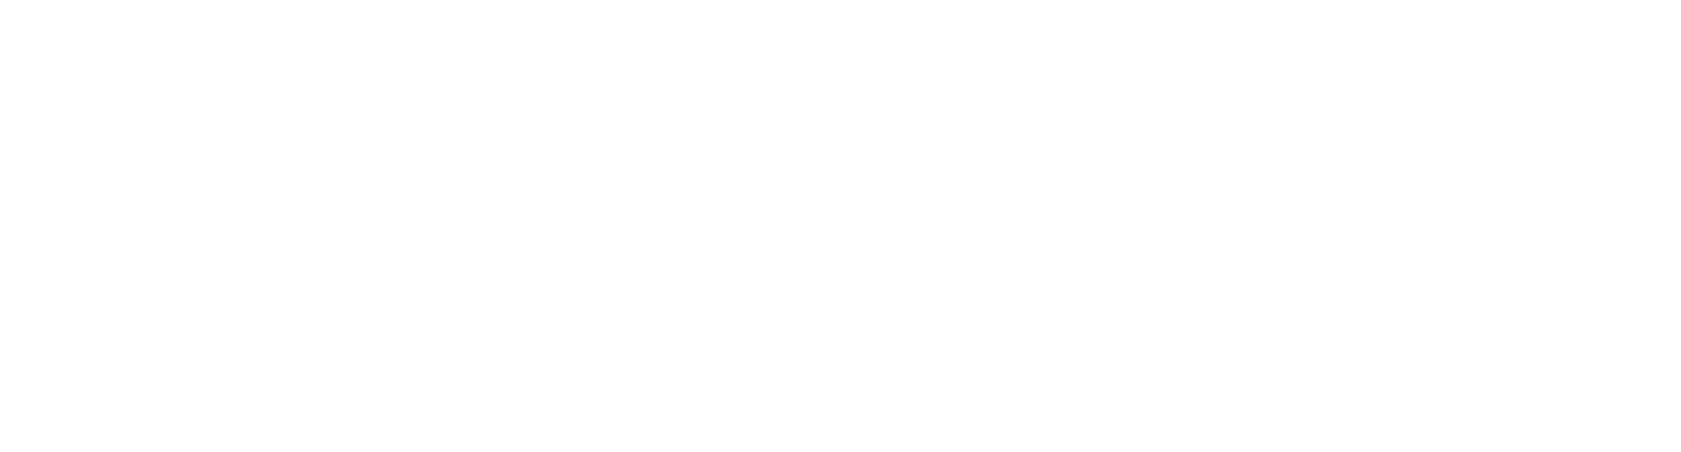 Calibar